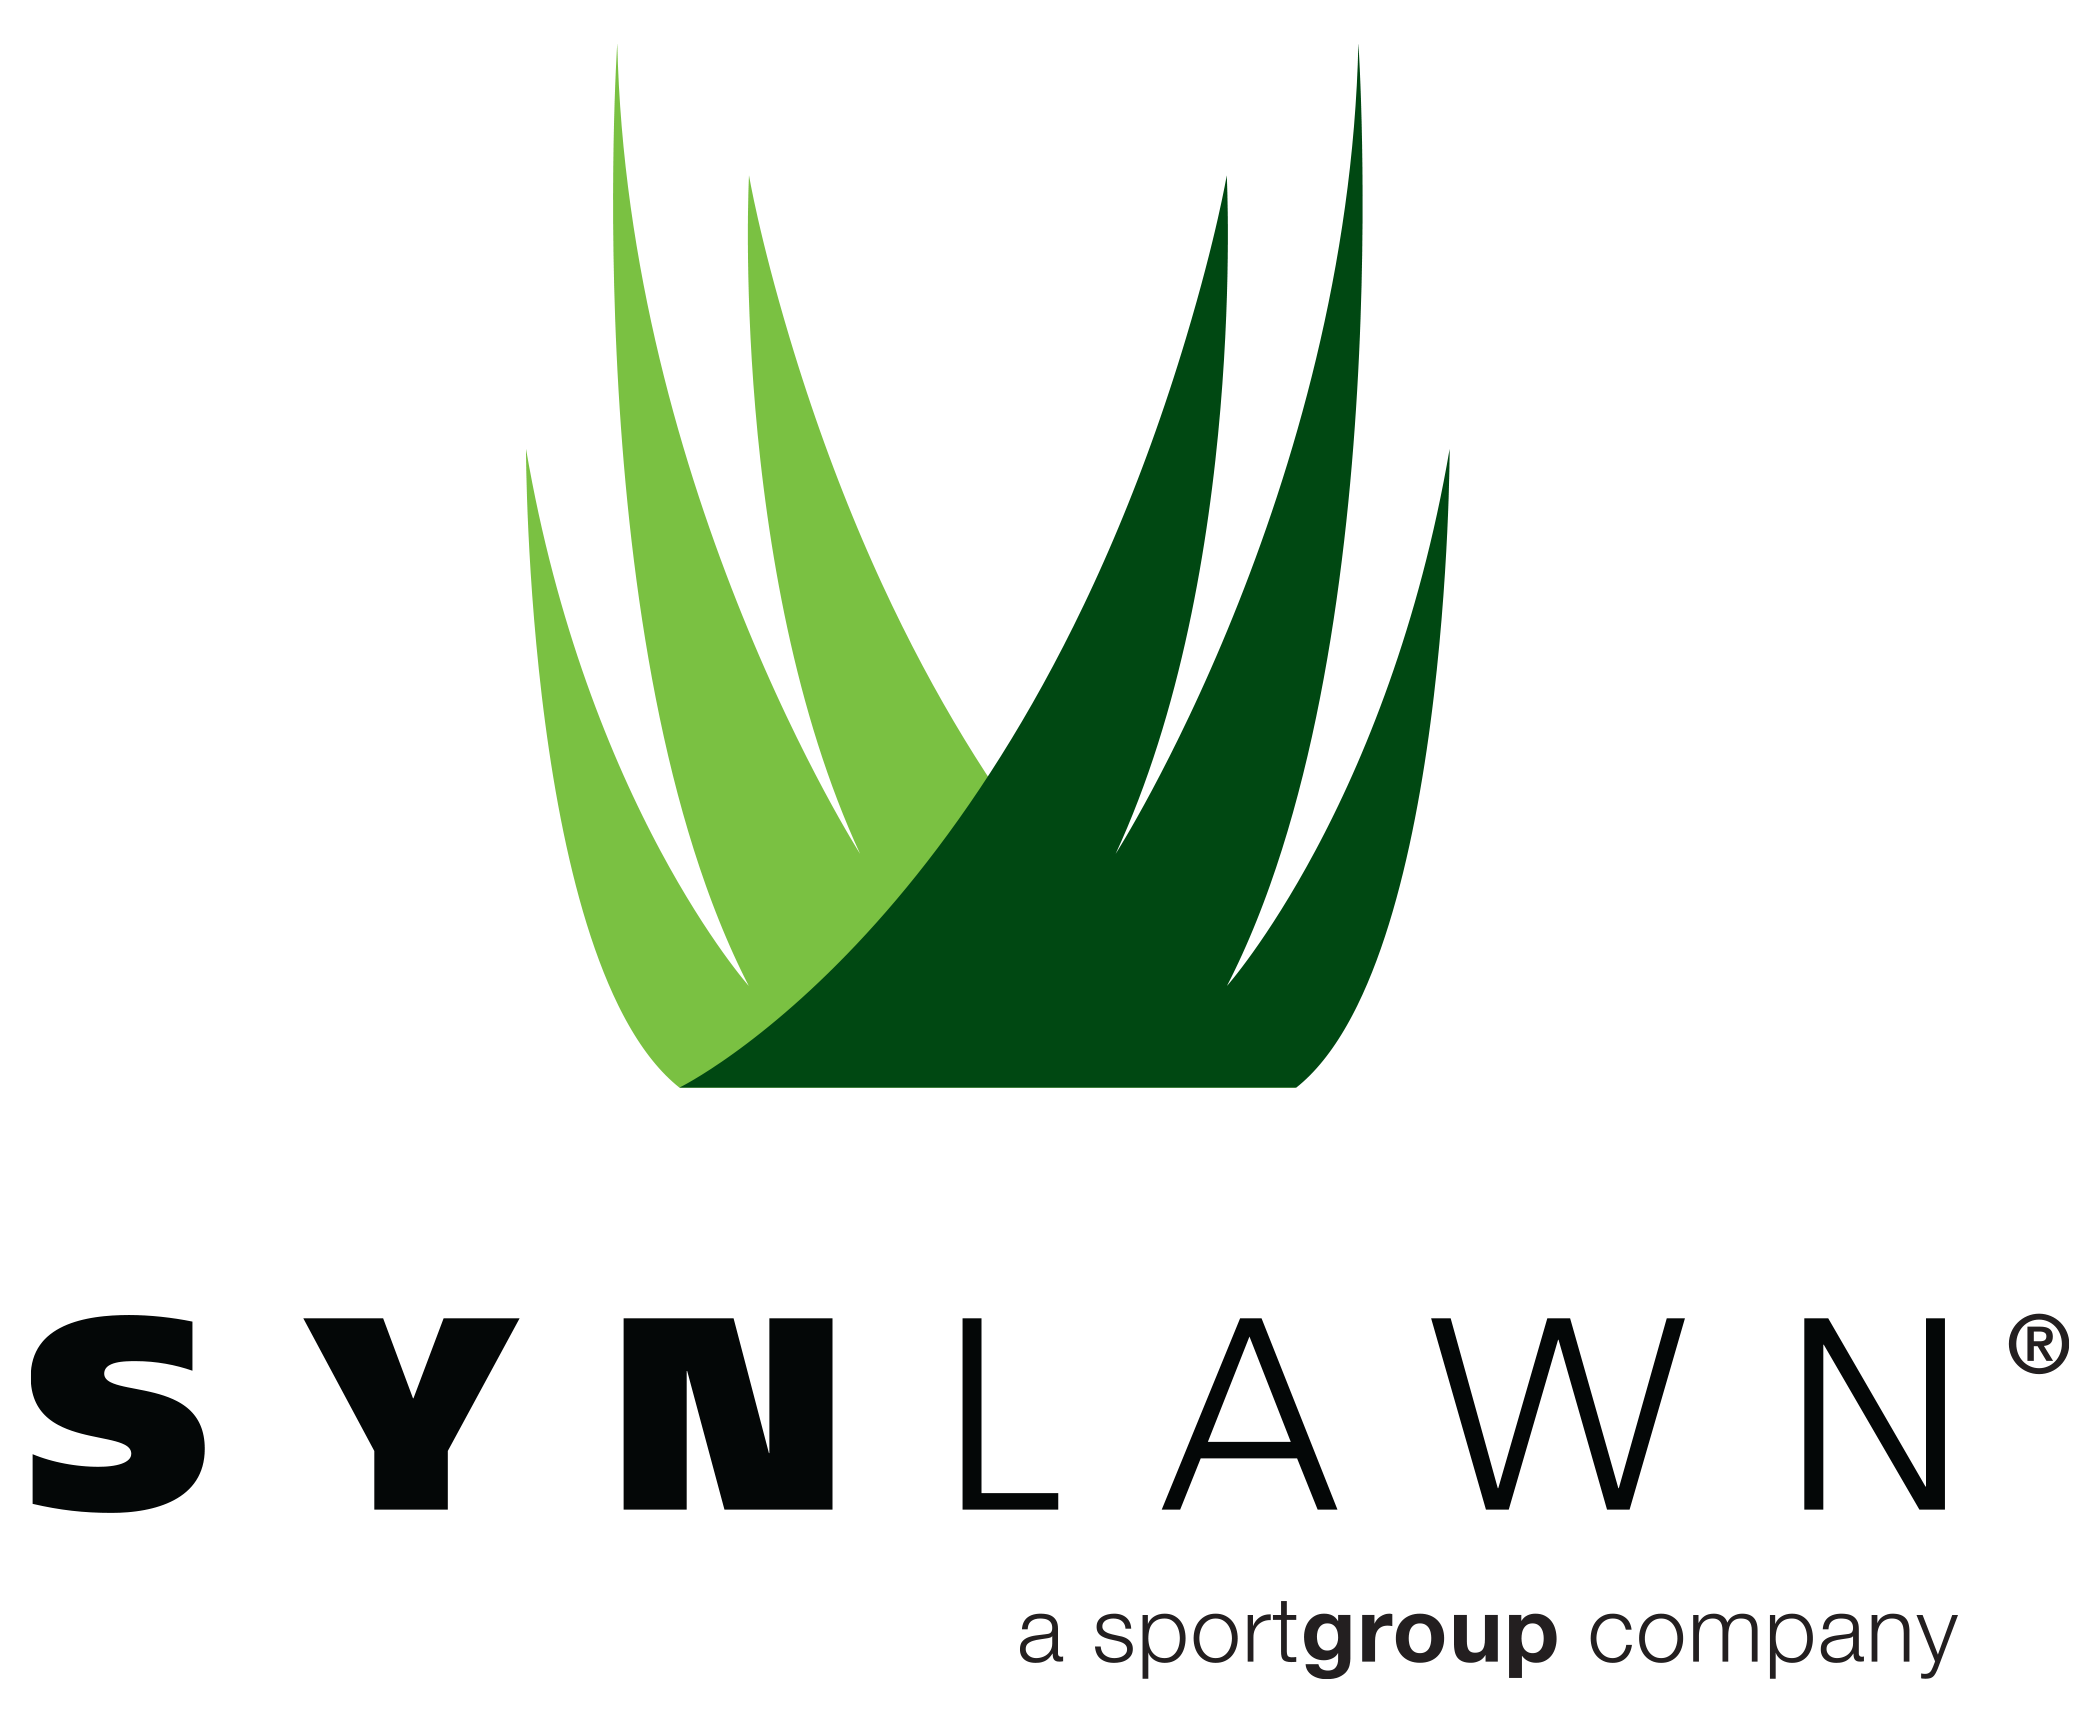 SYNLawn Logo